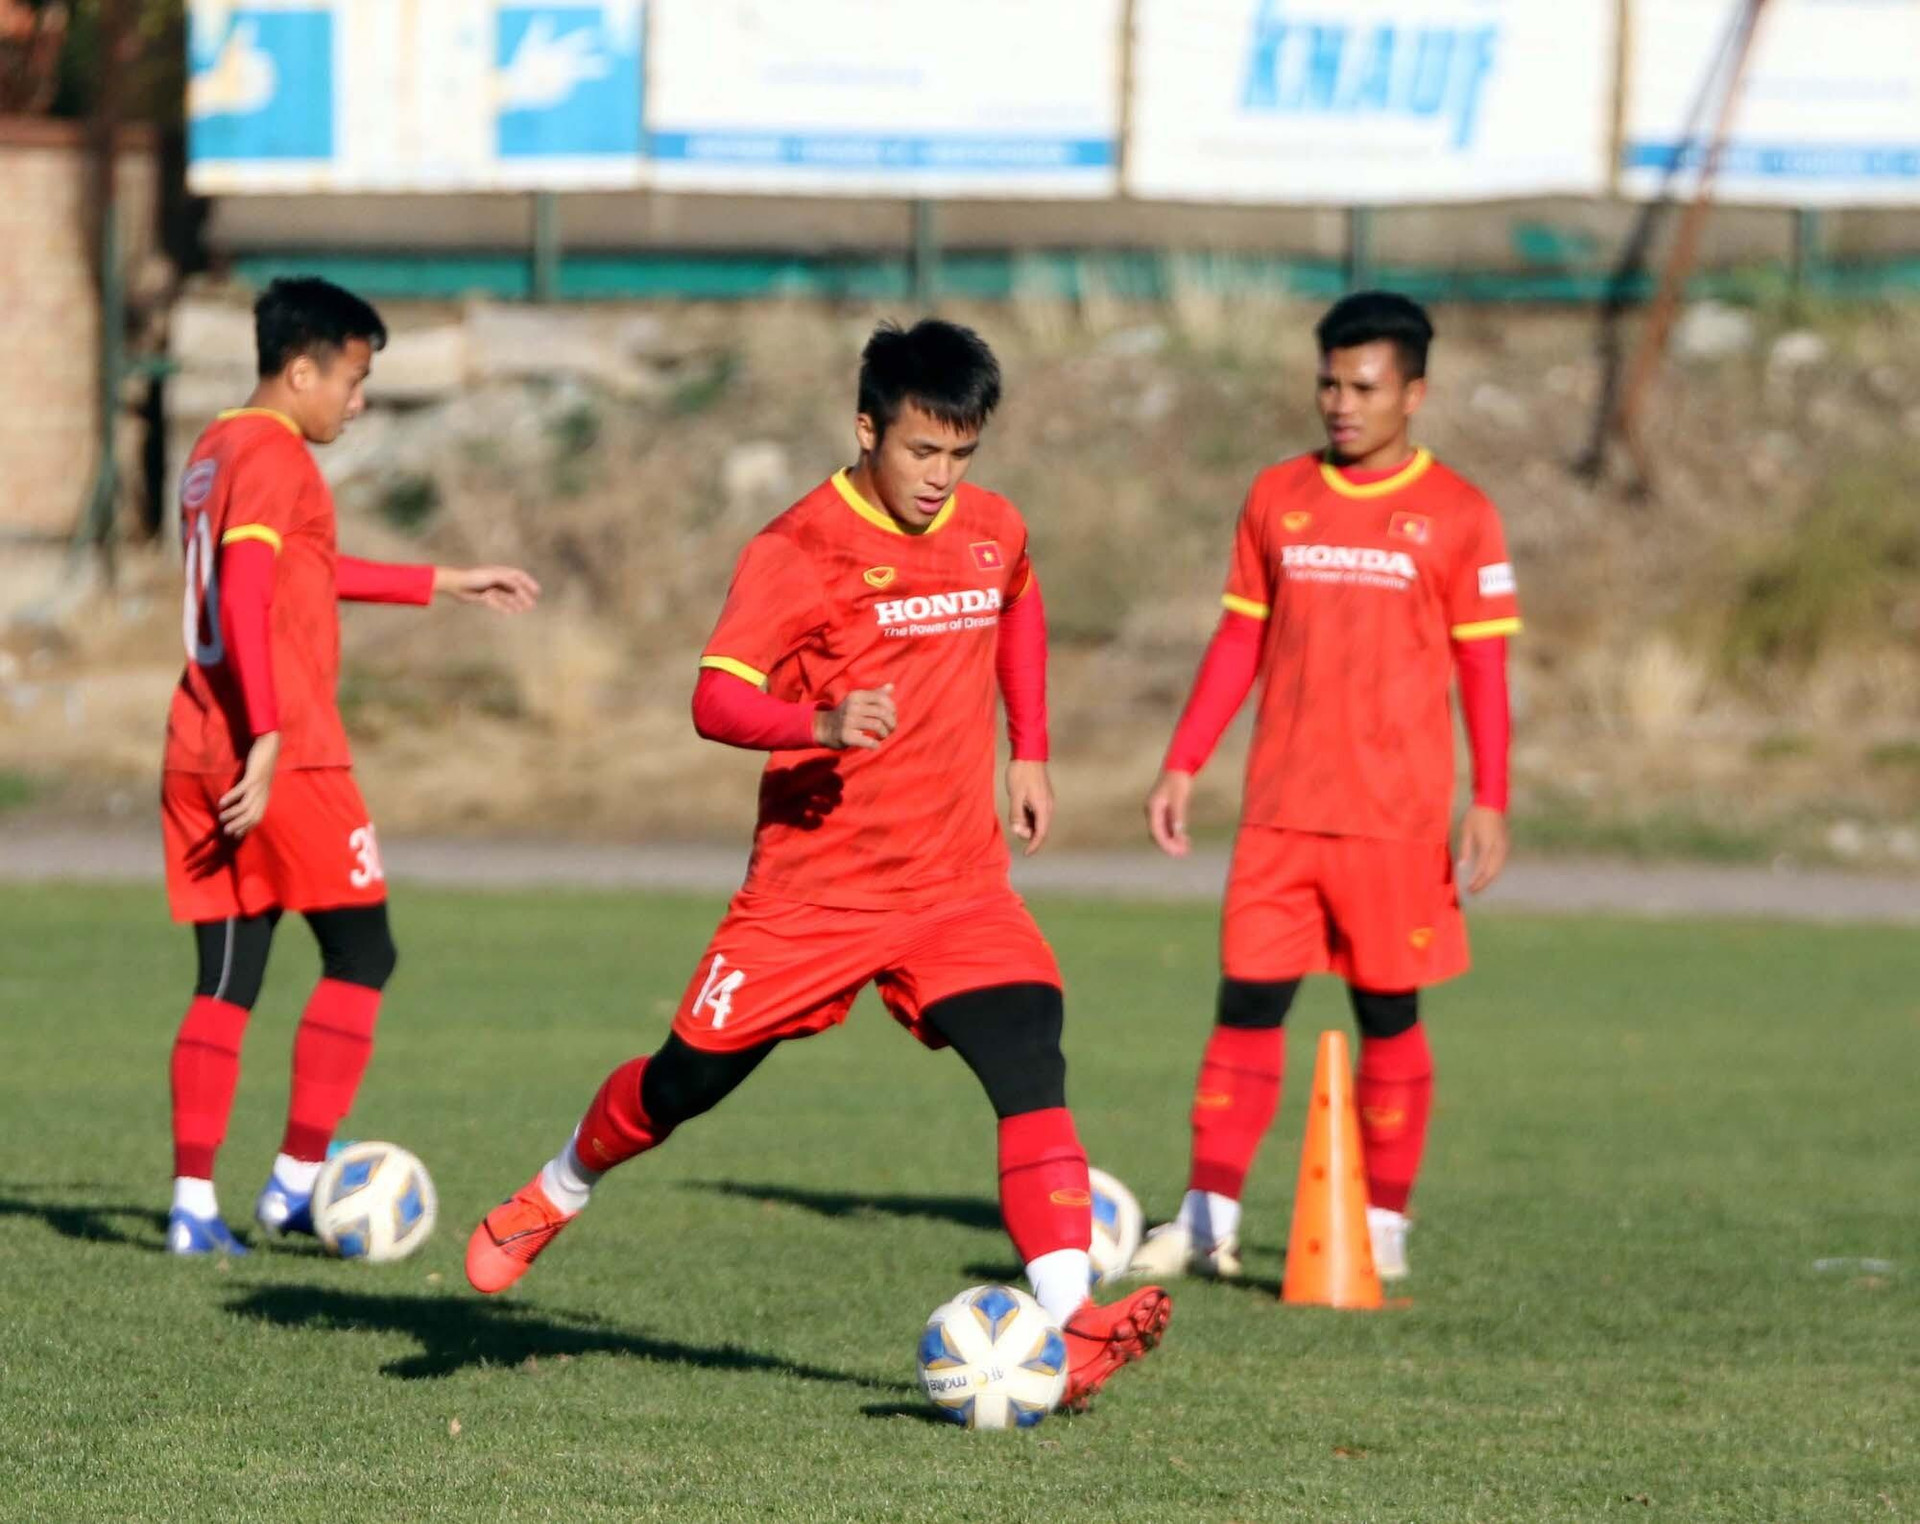 HLV Park Hang Seo thử tài sút bóng trúng xà ngang cùng tuyển thủ U23 Việt Nam - 2